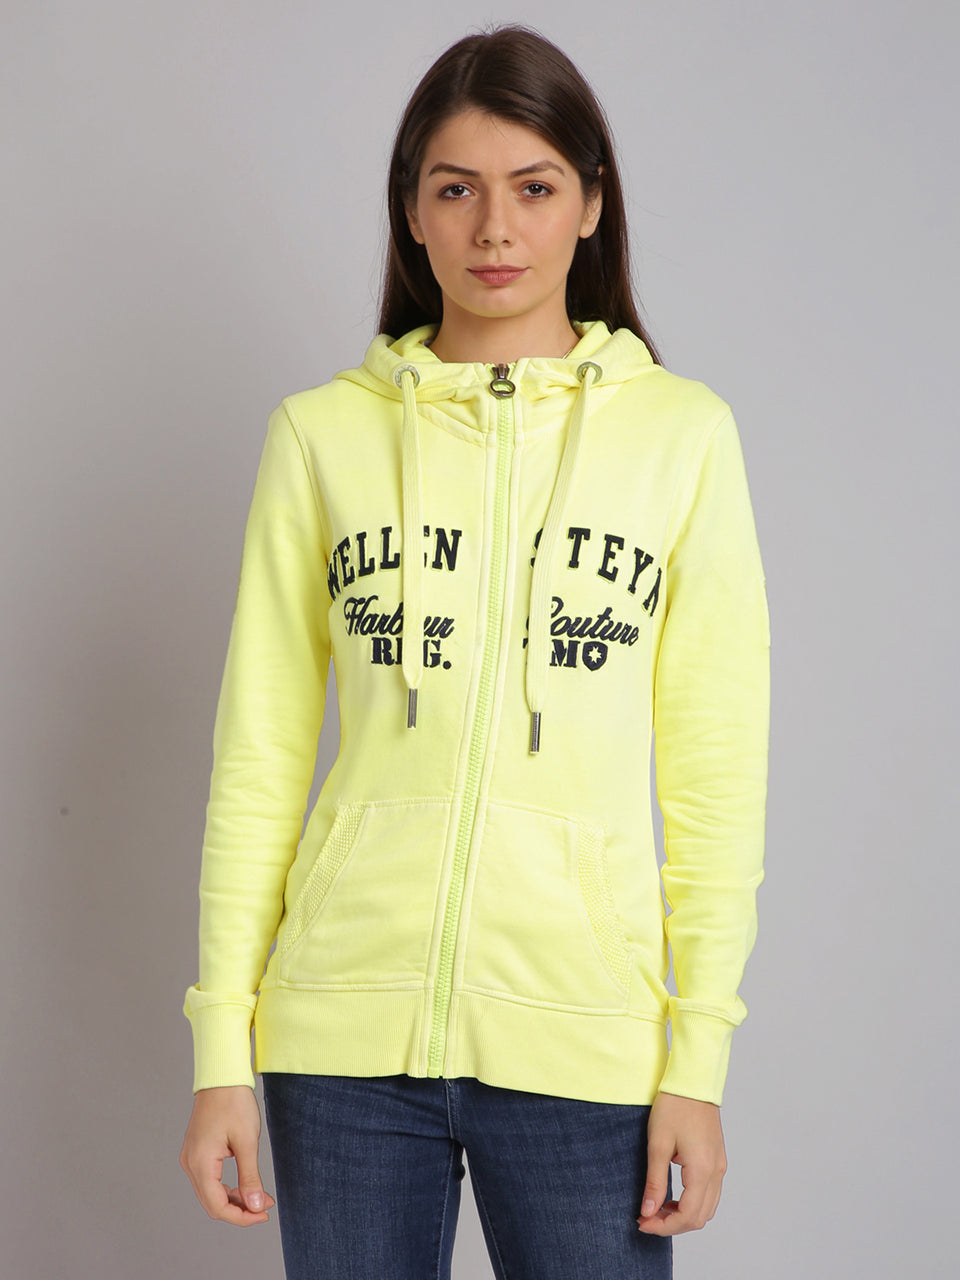 women yellow embroidered zip hooded sweatshirt